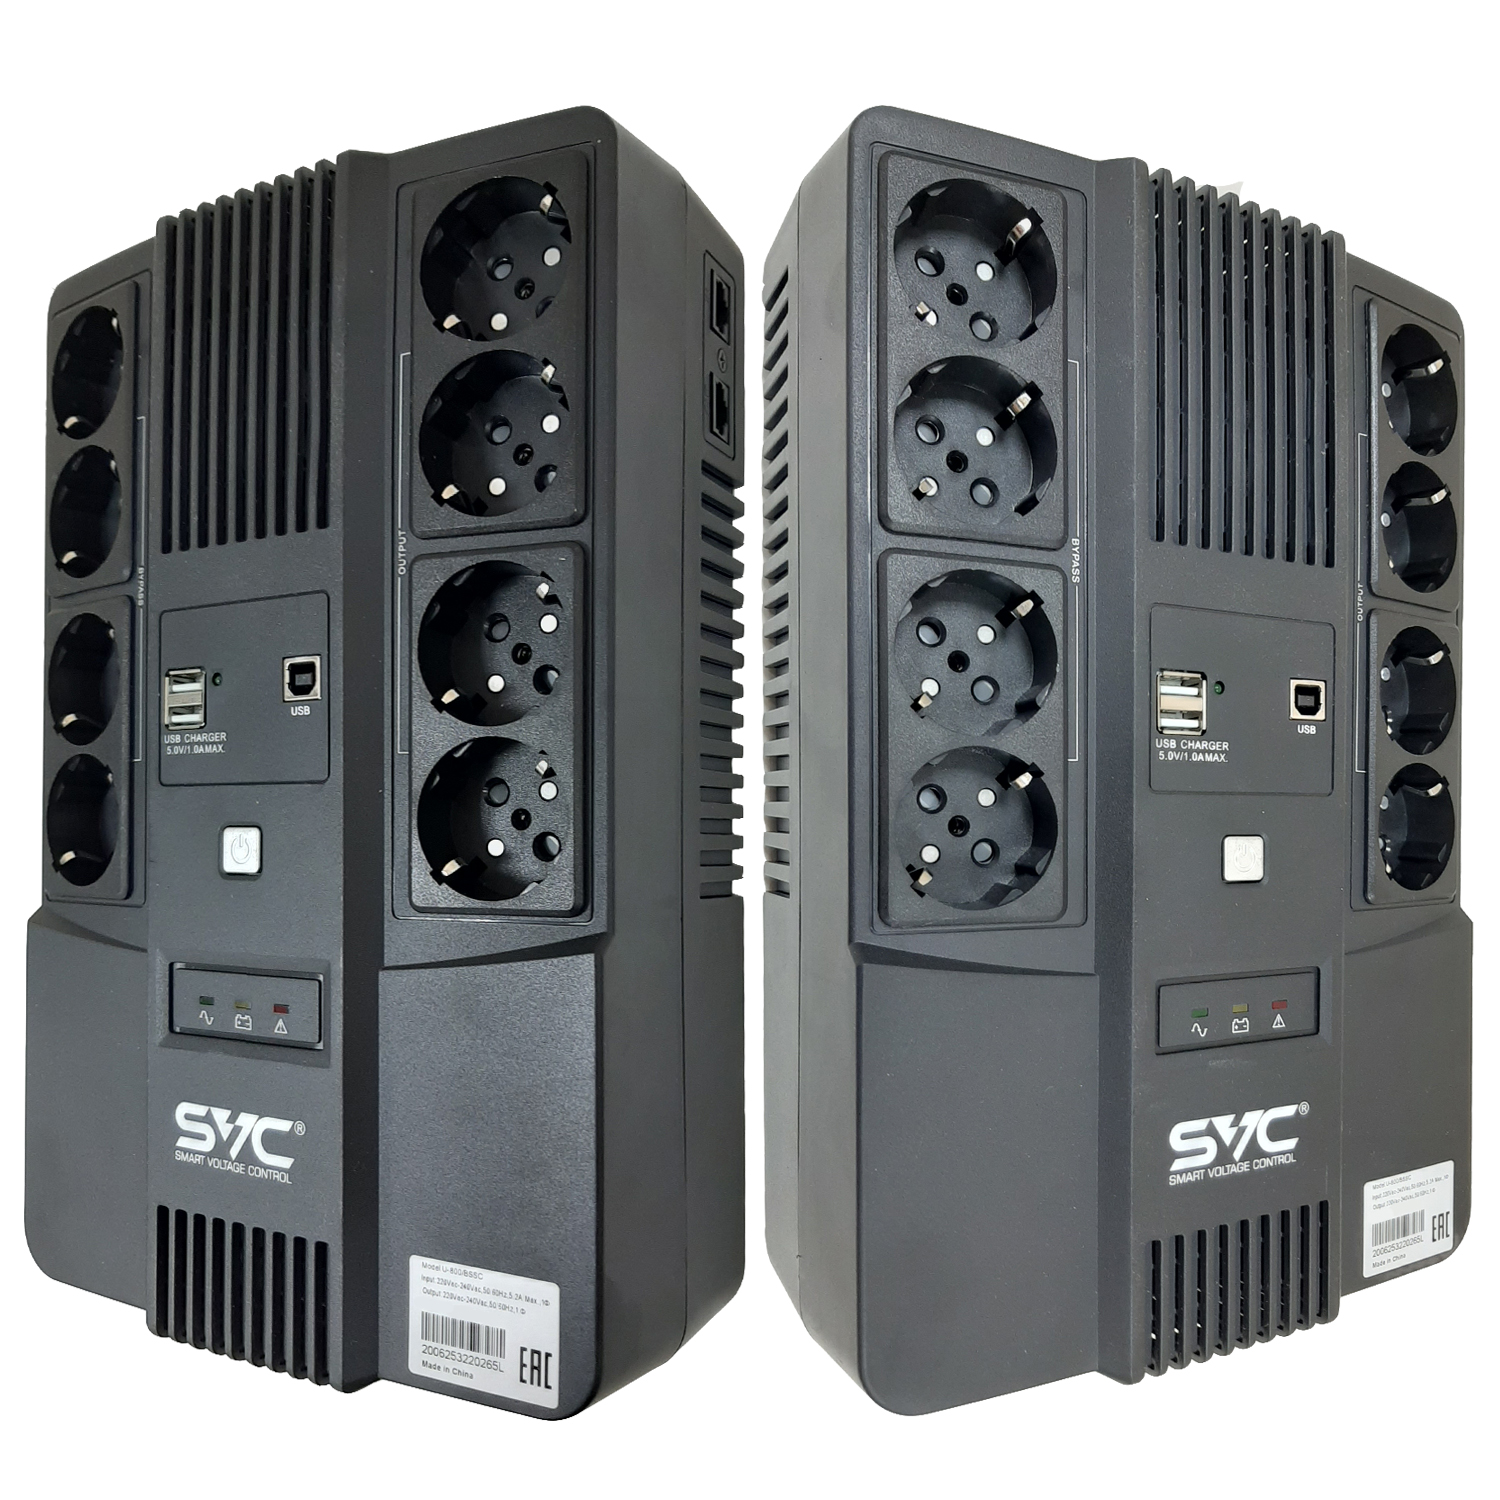 ИБП SVC U-800/BSSC, 800 VA, 480 Вт, EURO, розеток - 8, USB, черный (U-800/BSSC)